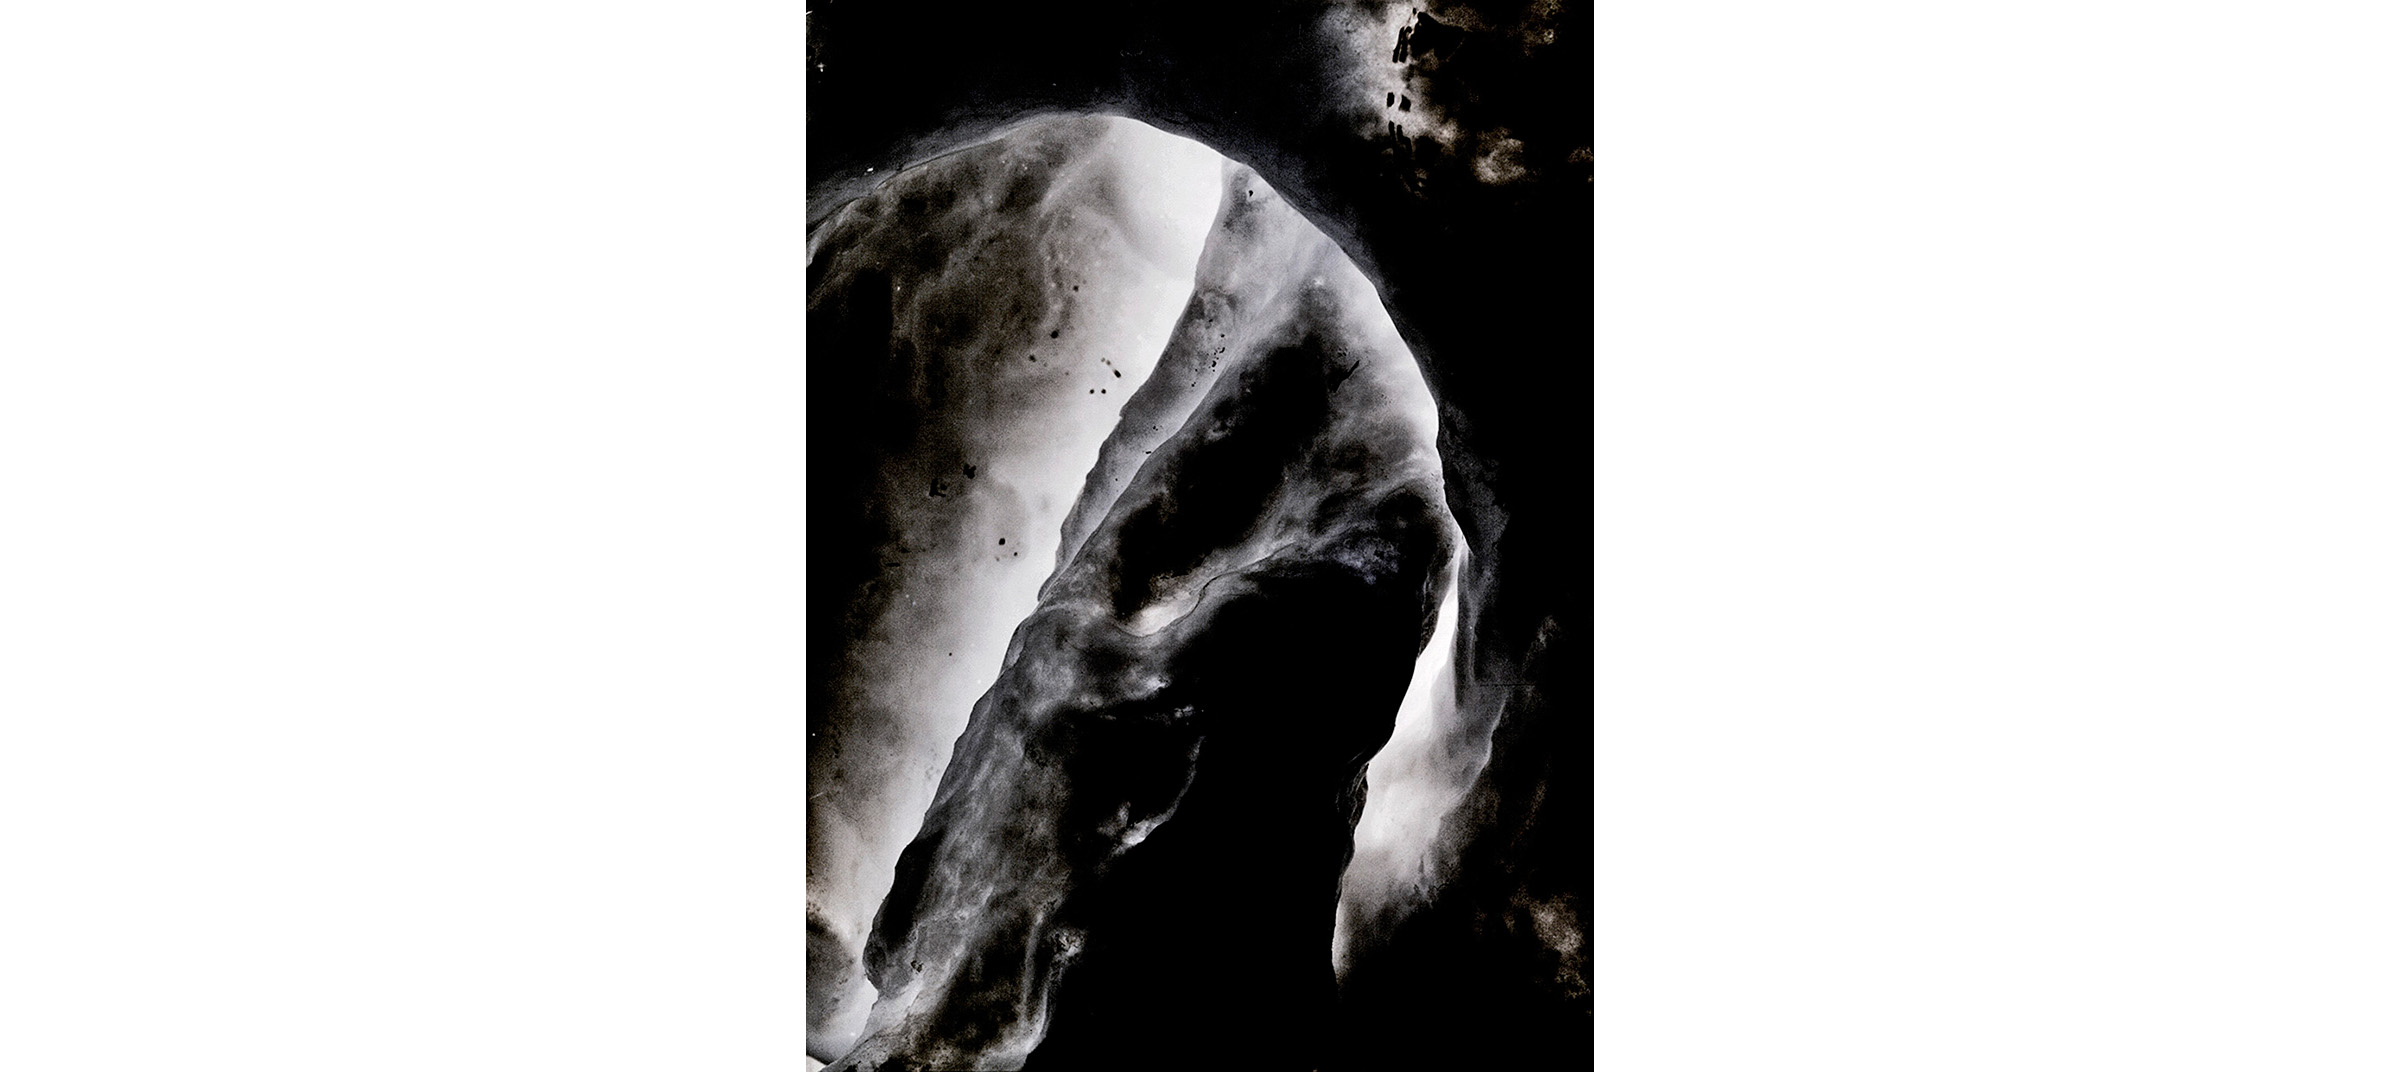   X 23  Untitled N°4, 2014/2015 Tirage gélatino argentique, 144 x 104 cm |&nbsp;Gelatin silver print, 56,69 x 40,94 inches  2/4 